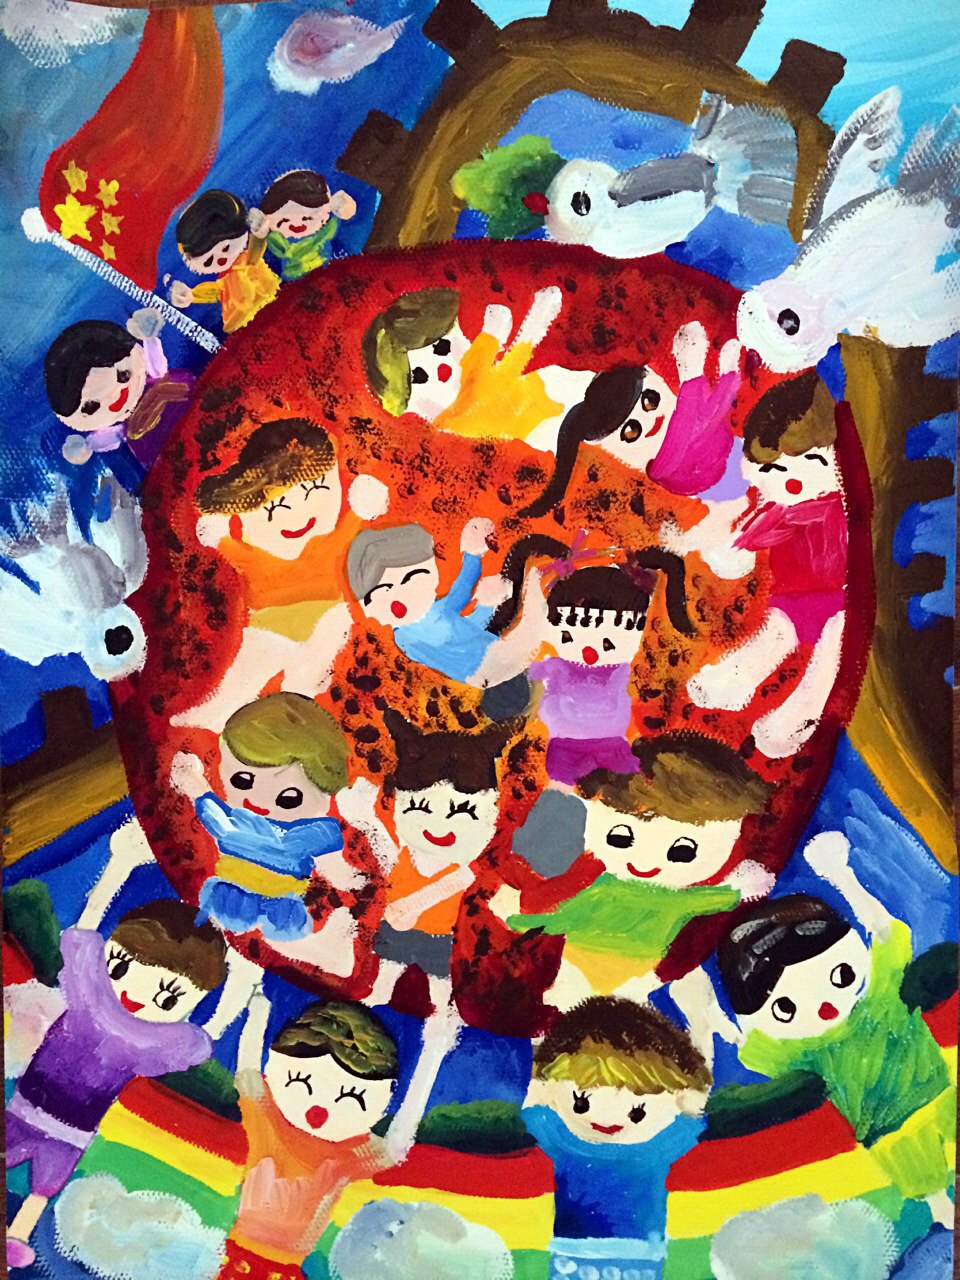 台州黄岩区西江小学小记者张韵晗绘画作品《快乐的节日》